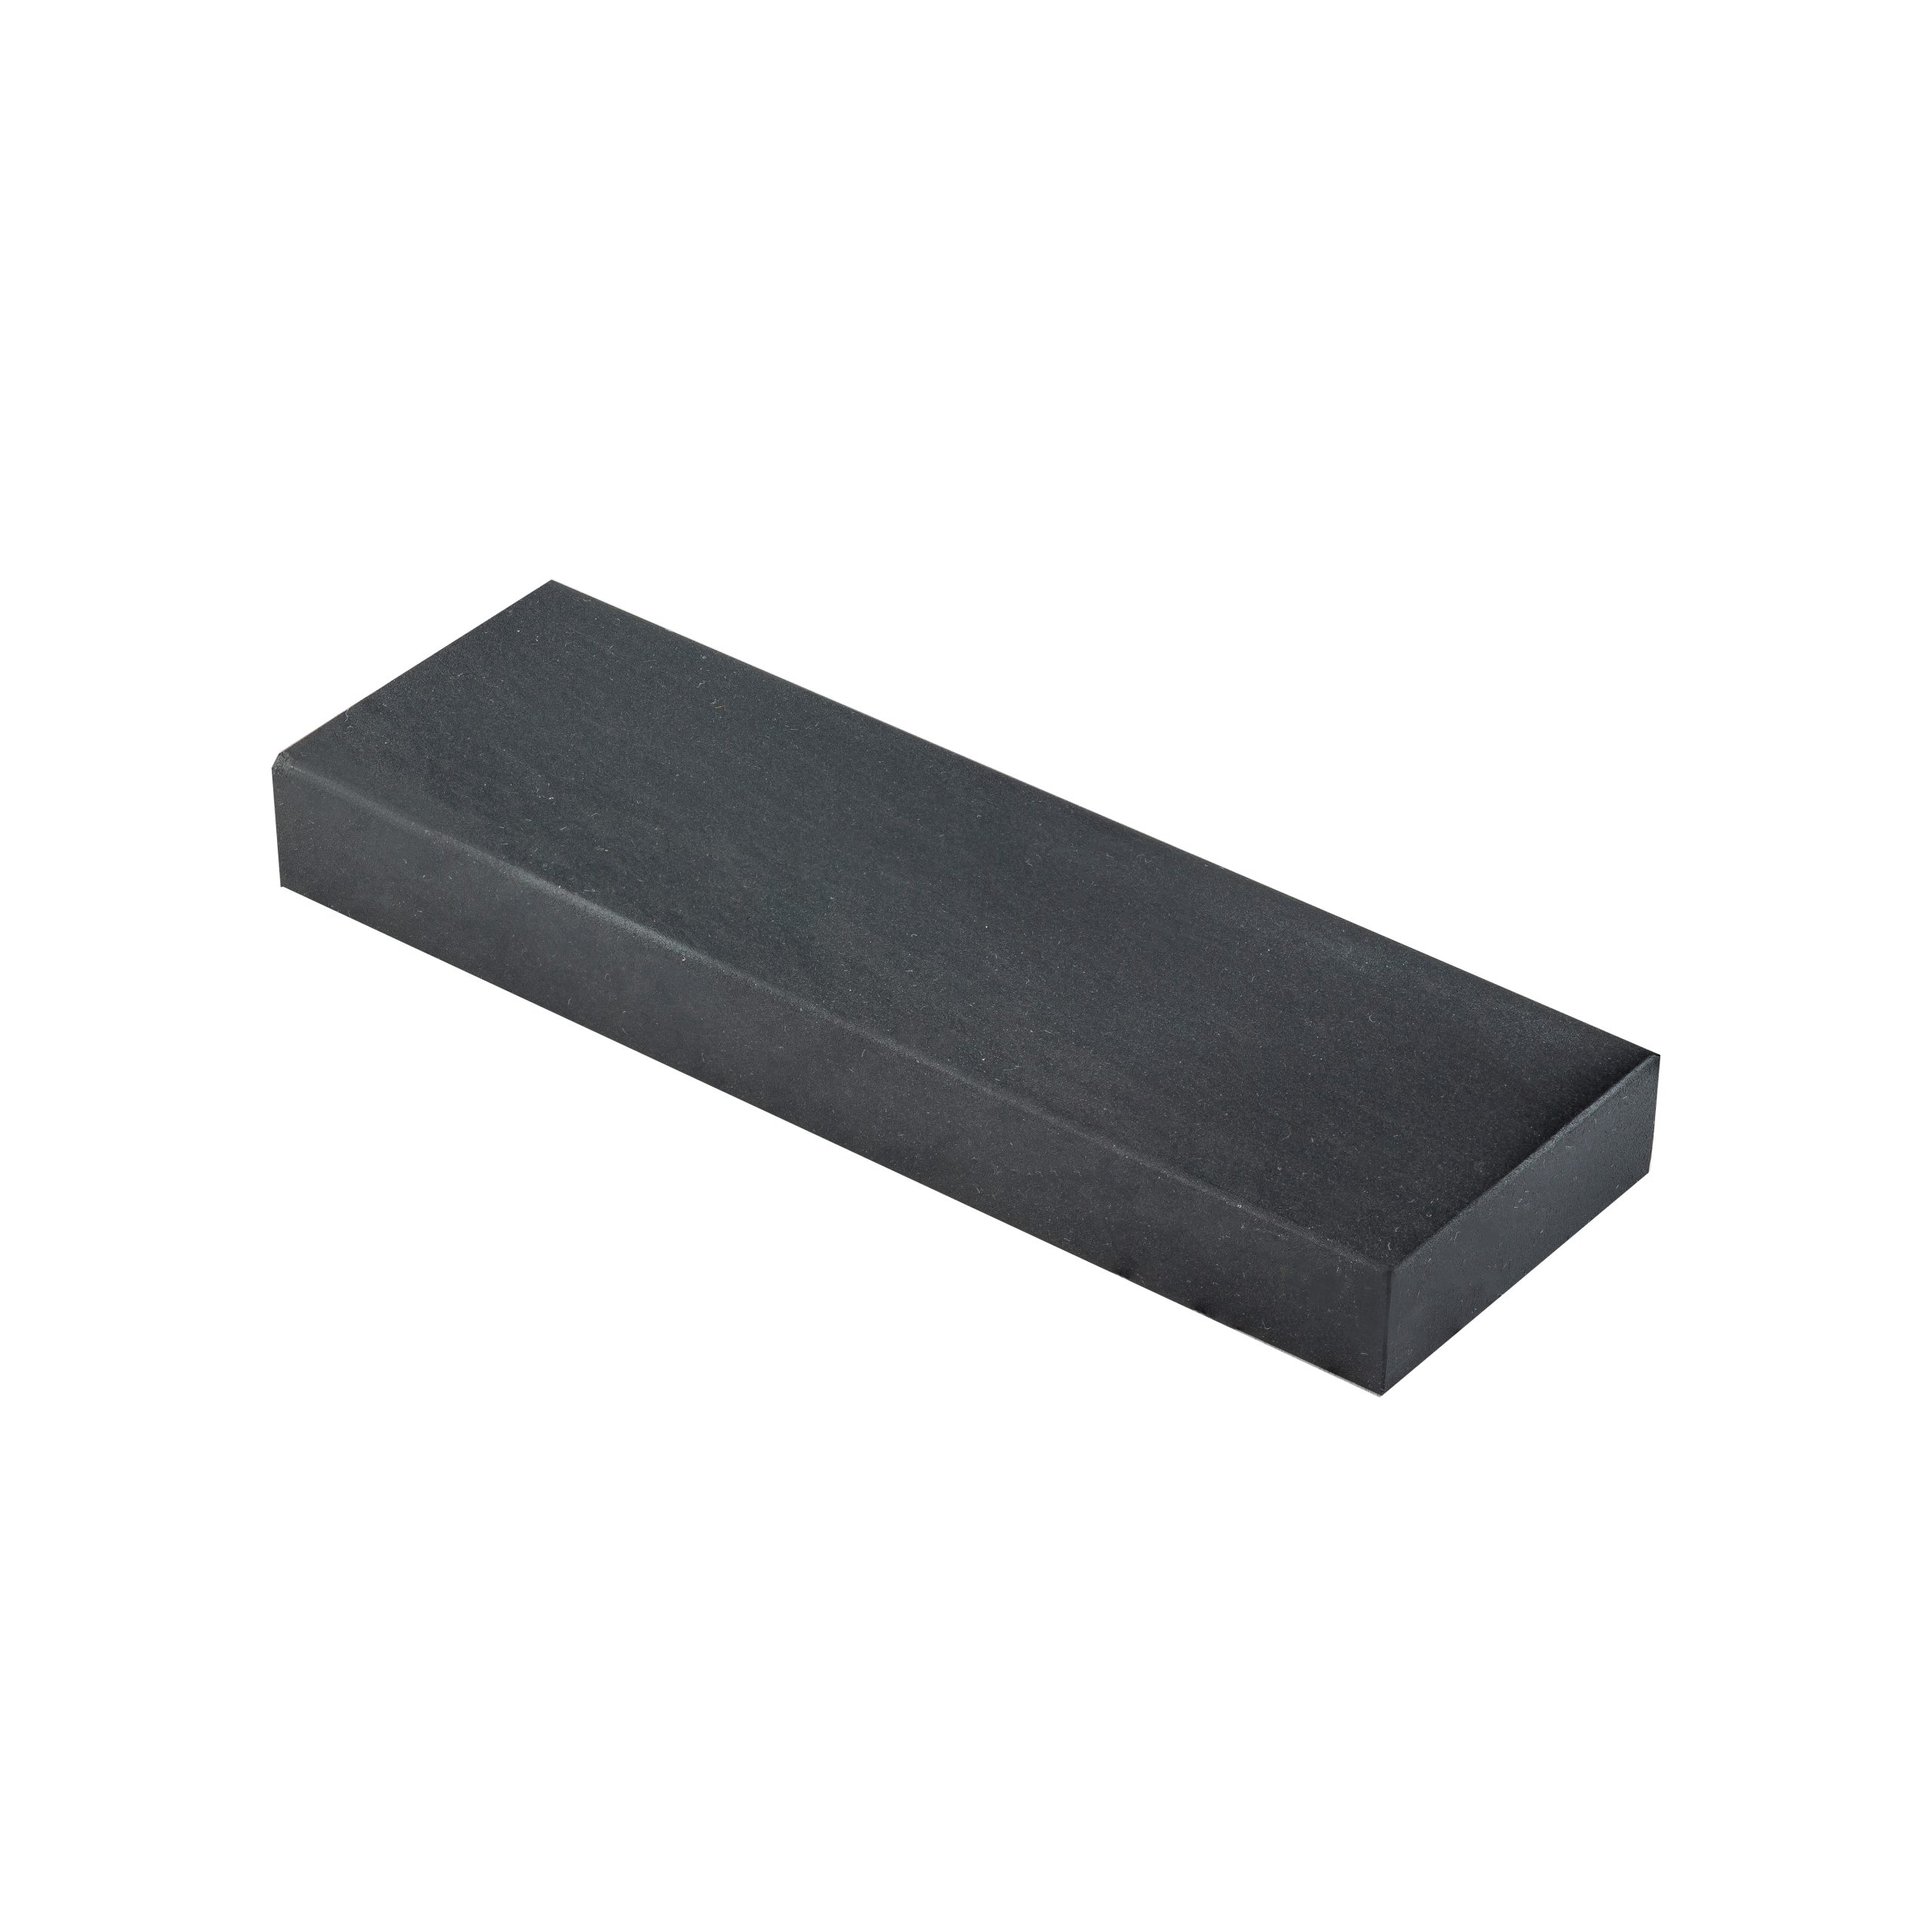 SPECIAL BLACK bench stone 6 x 2 x 1/2 ID 1102B27 - Dan's Whetstone